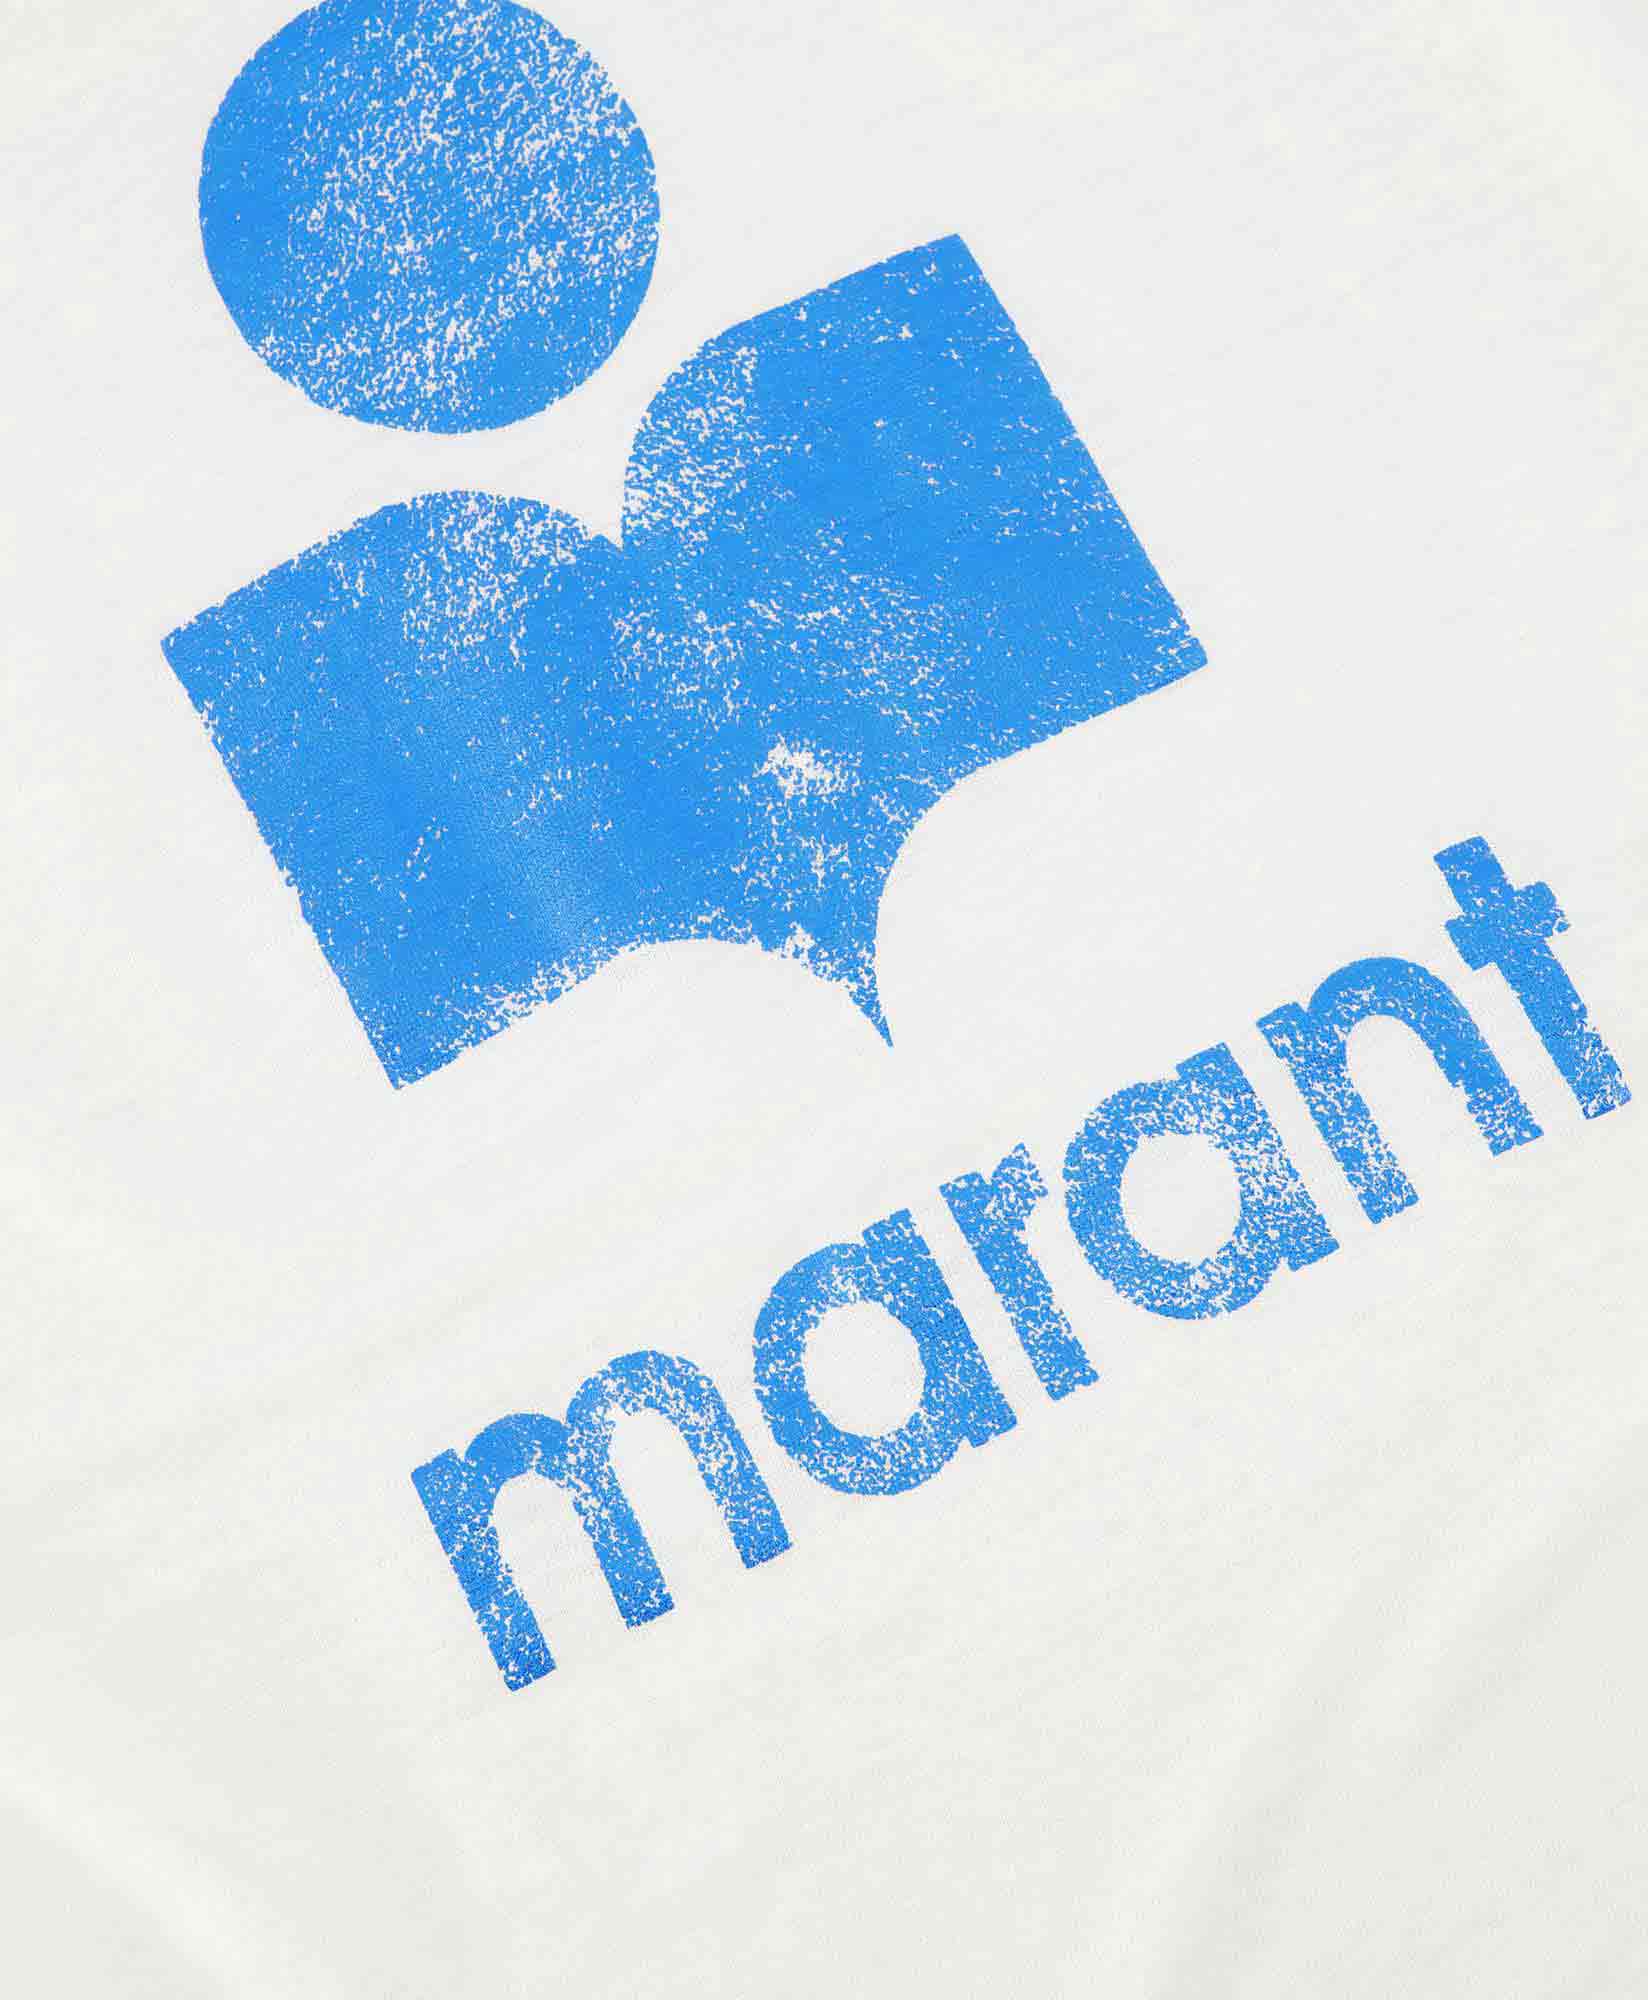 Marant Étoile T-shirt Korte Mouw Koldi Wit